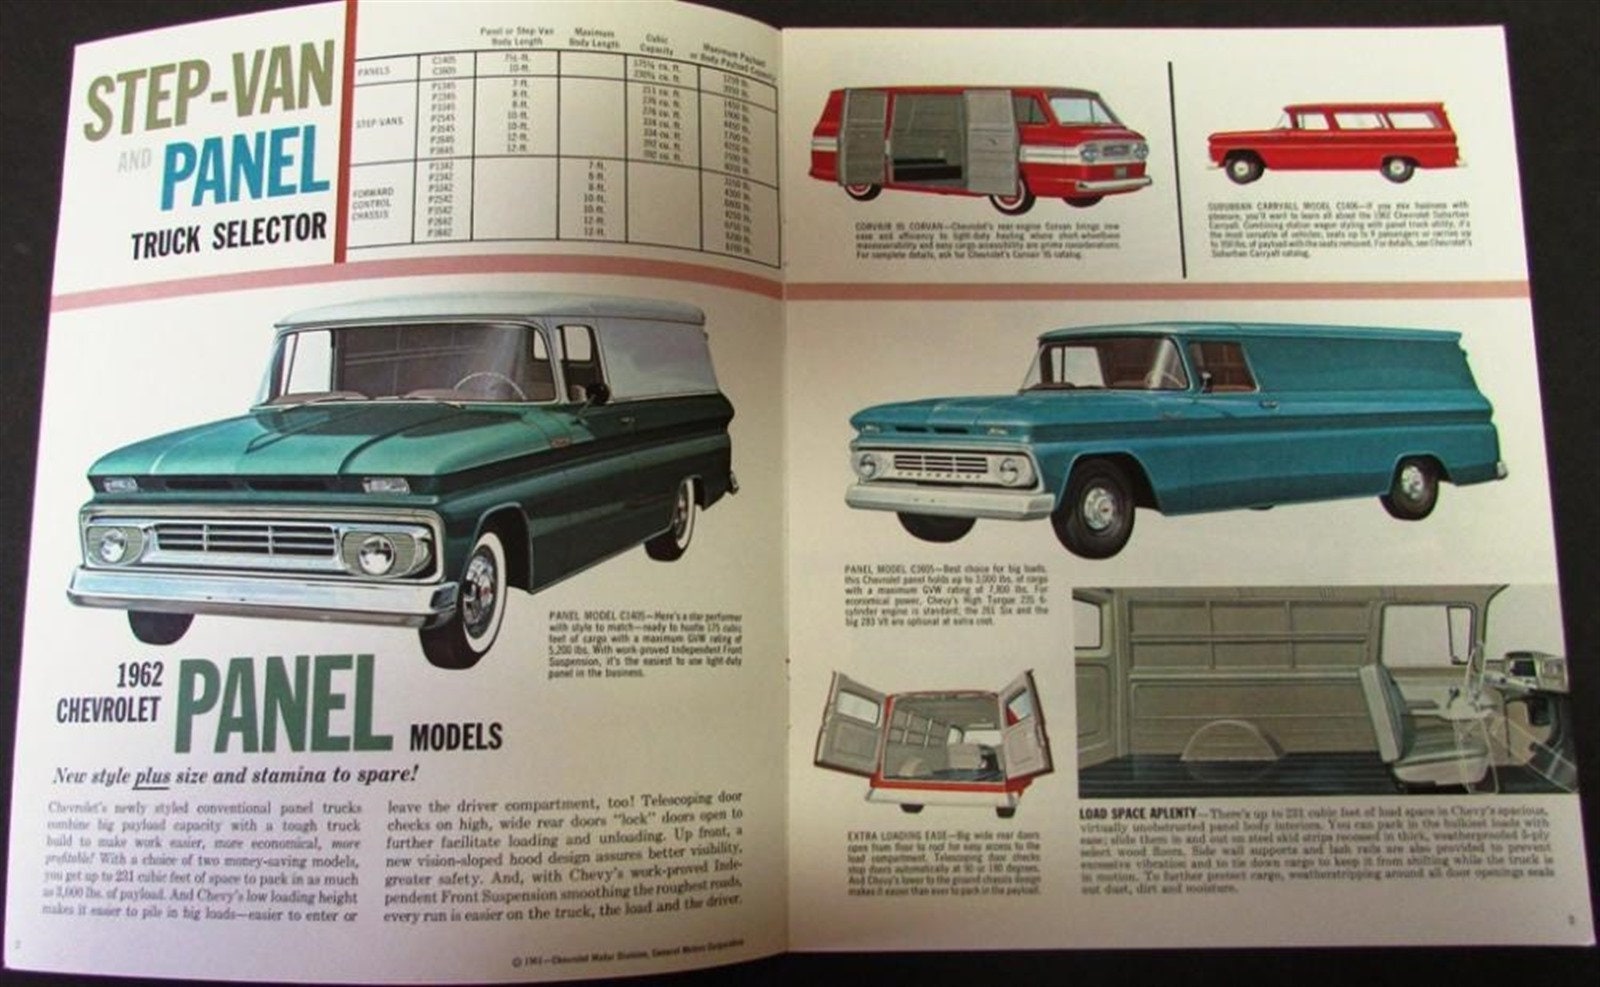 1965 Chevrolet Panel Truck & Step-Van Brochure Excellent